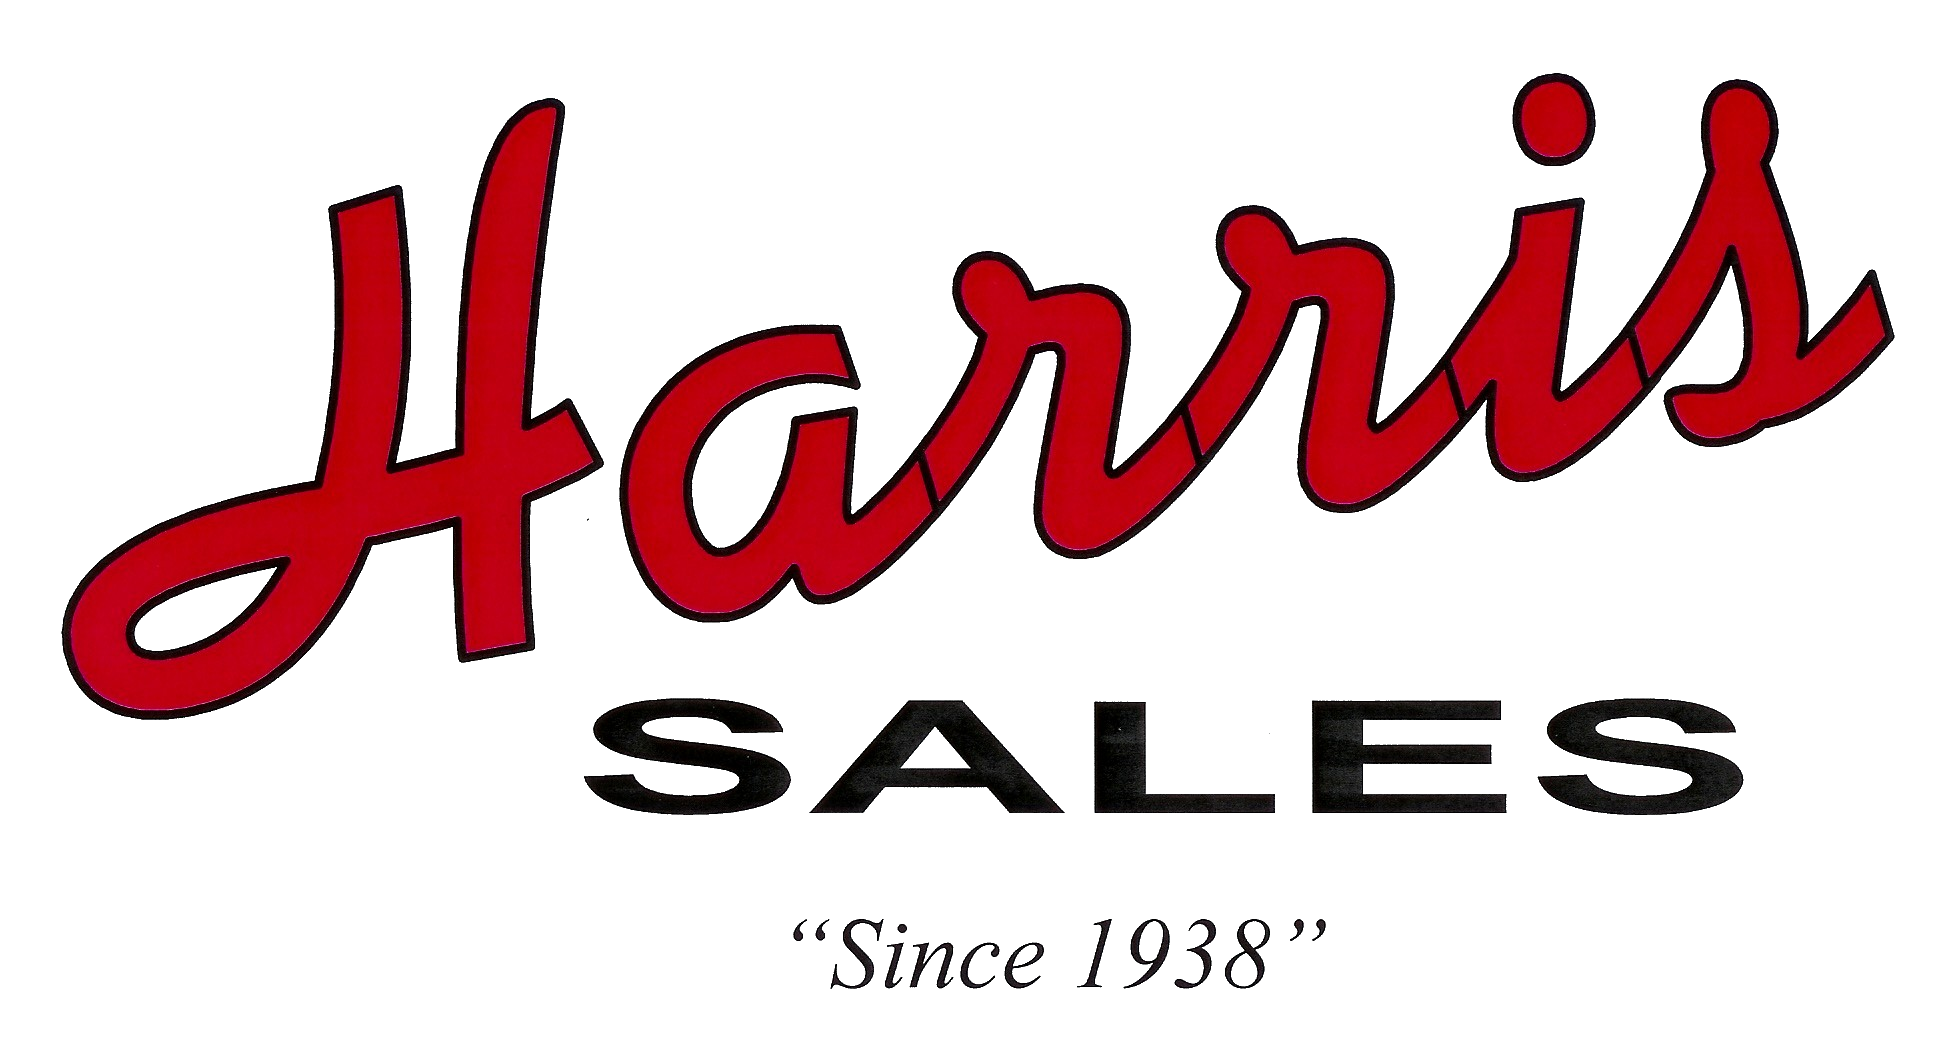 Harris Sales